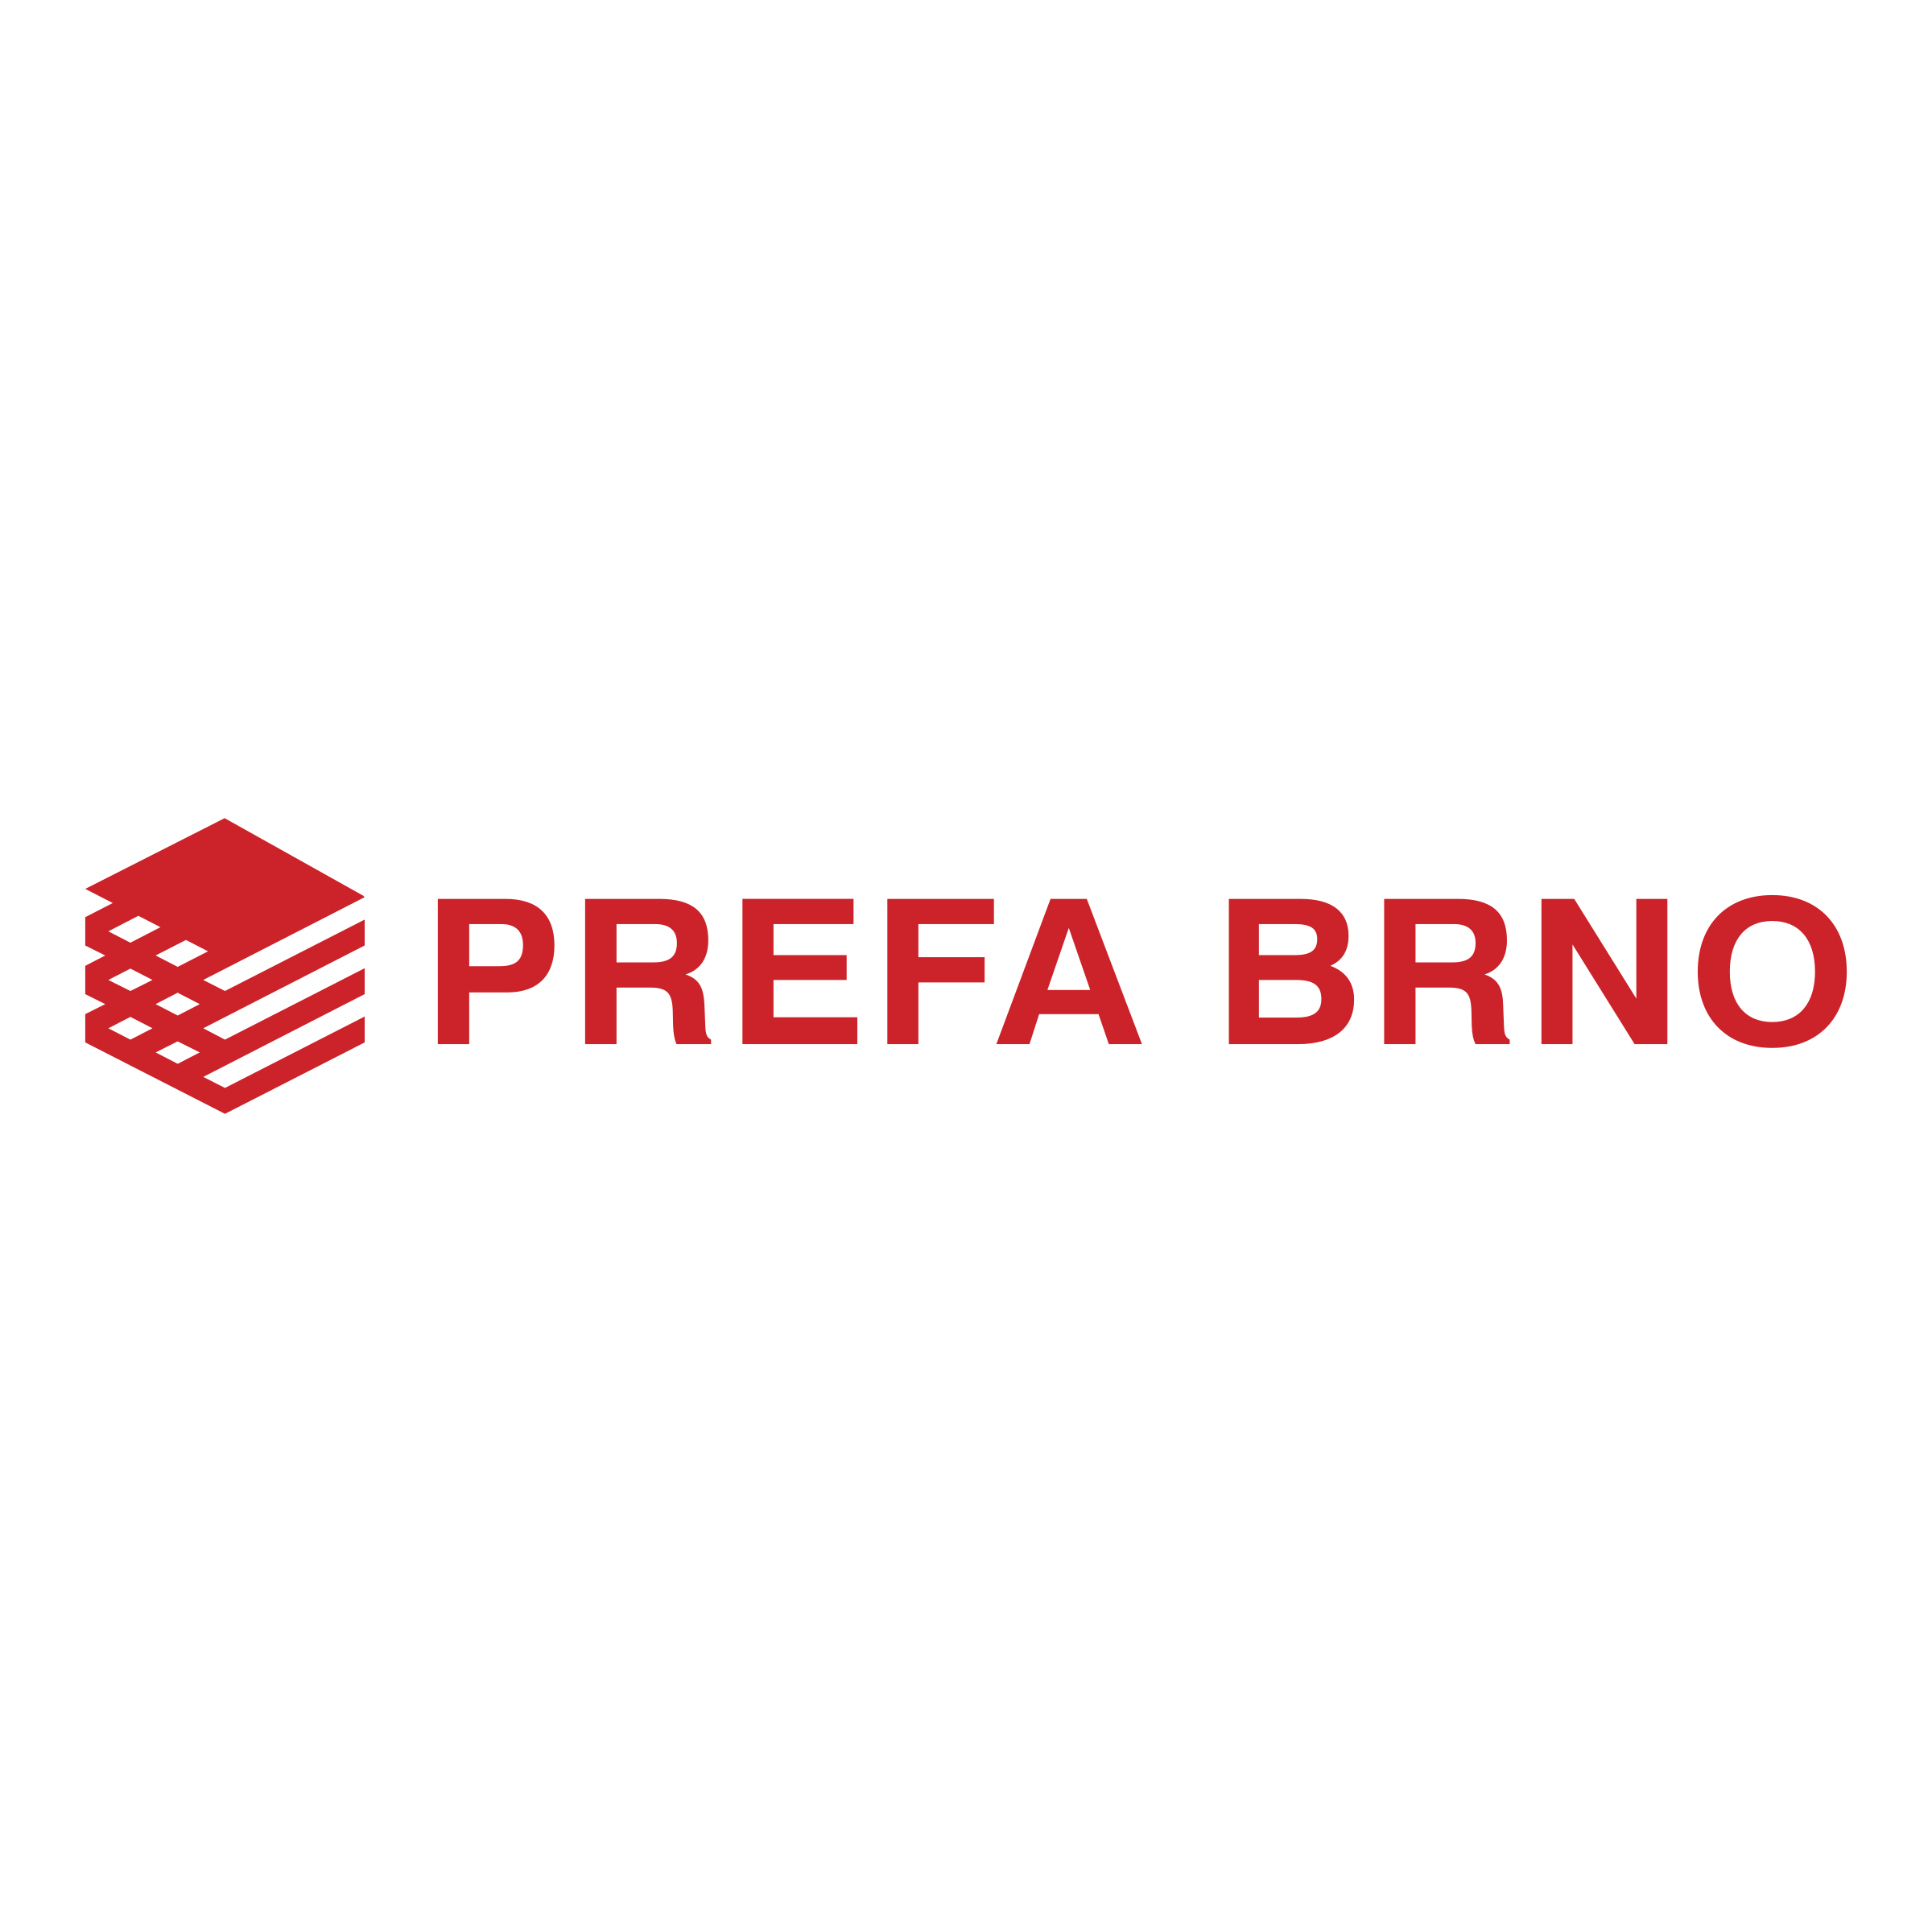 Brno Logo - Prefa Brno Logo PNG Transparent & SVG Vector - Freebie Supply